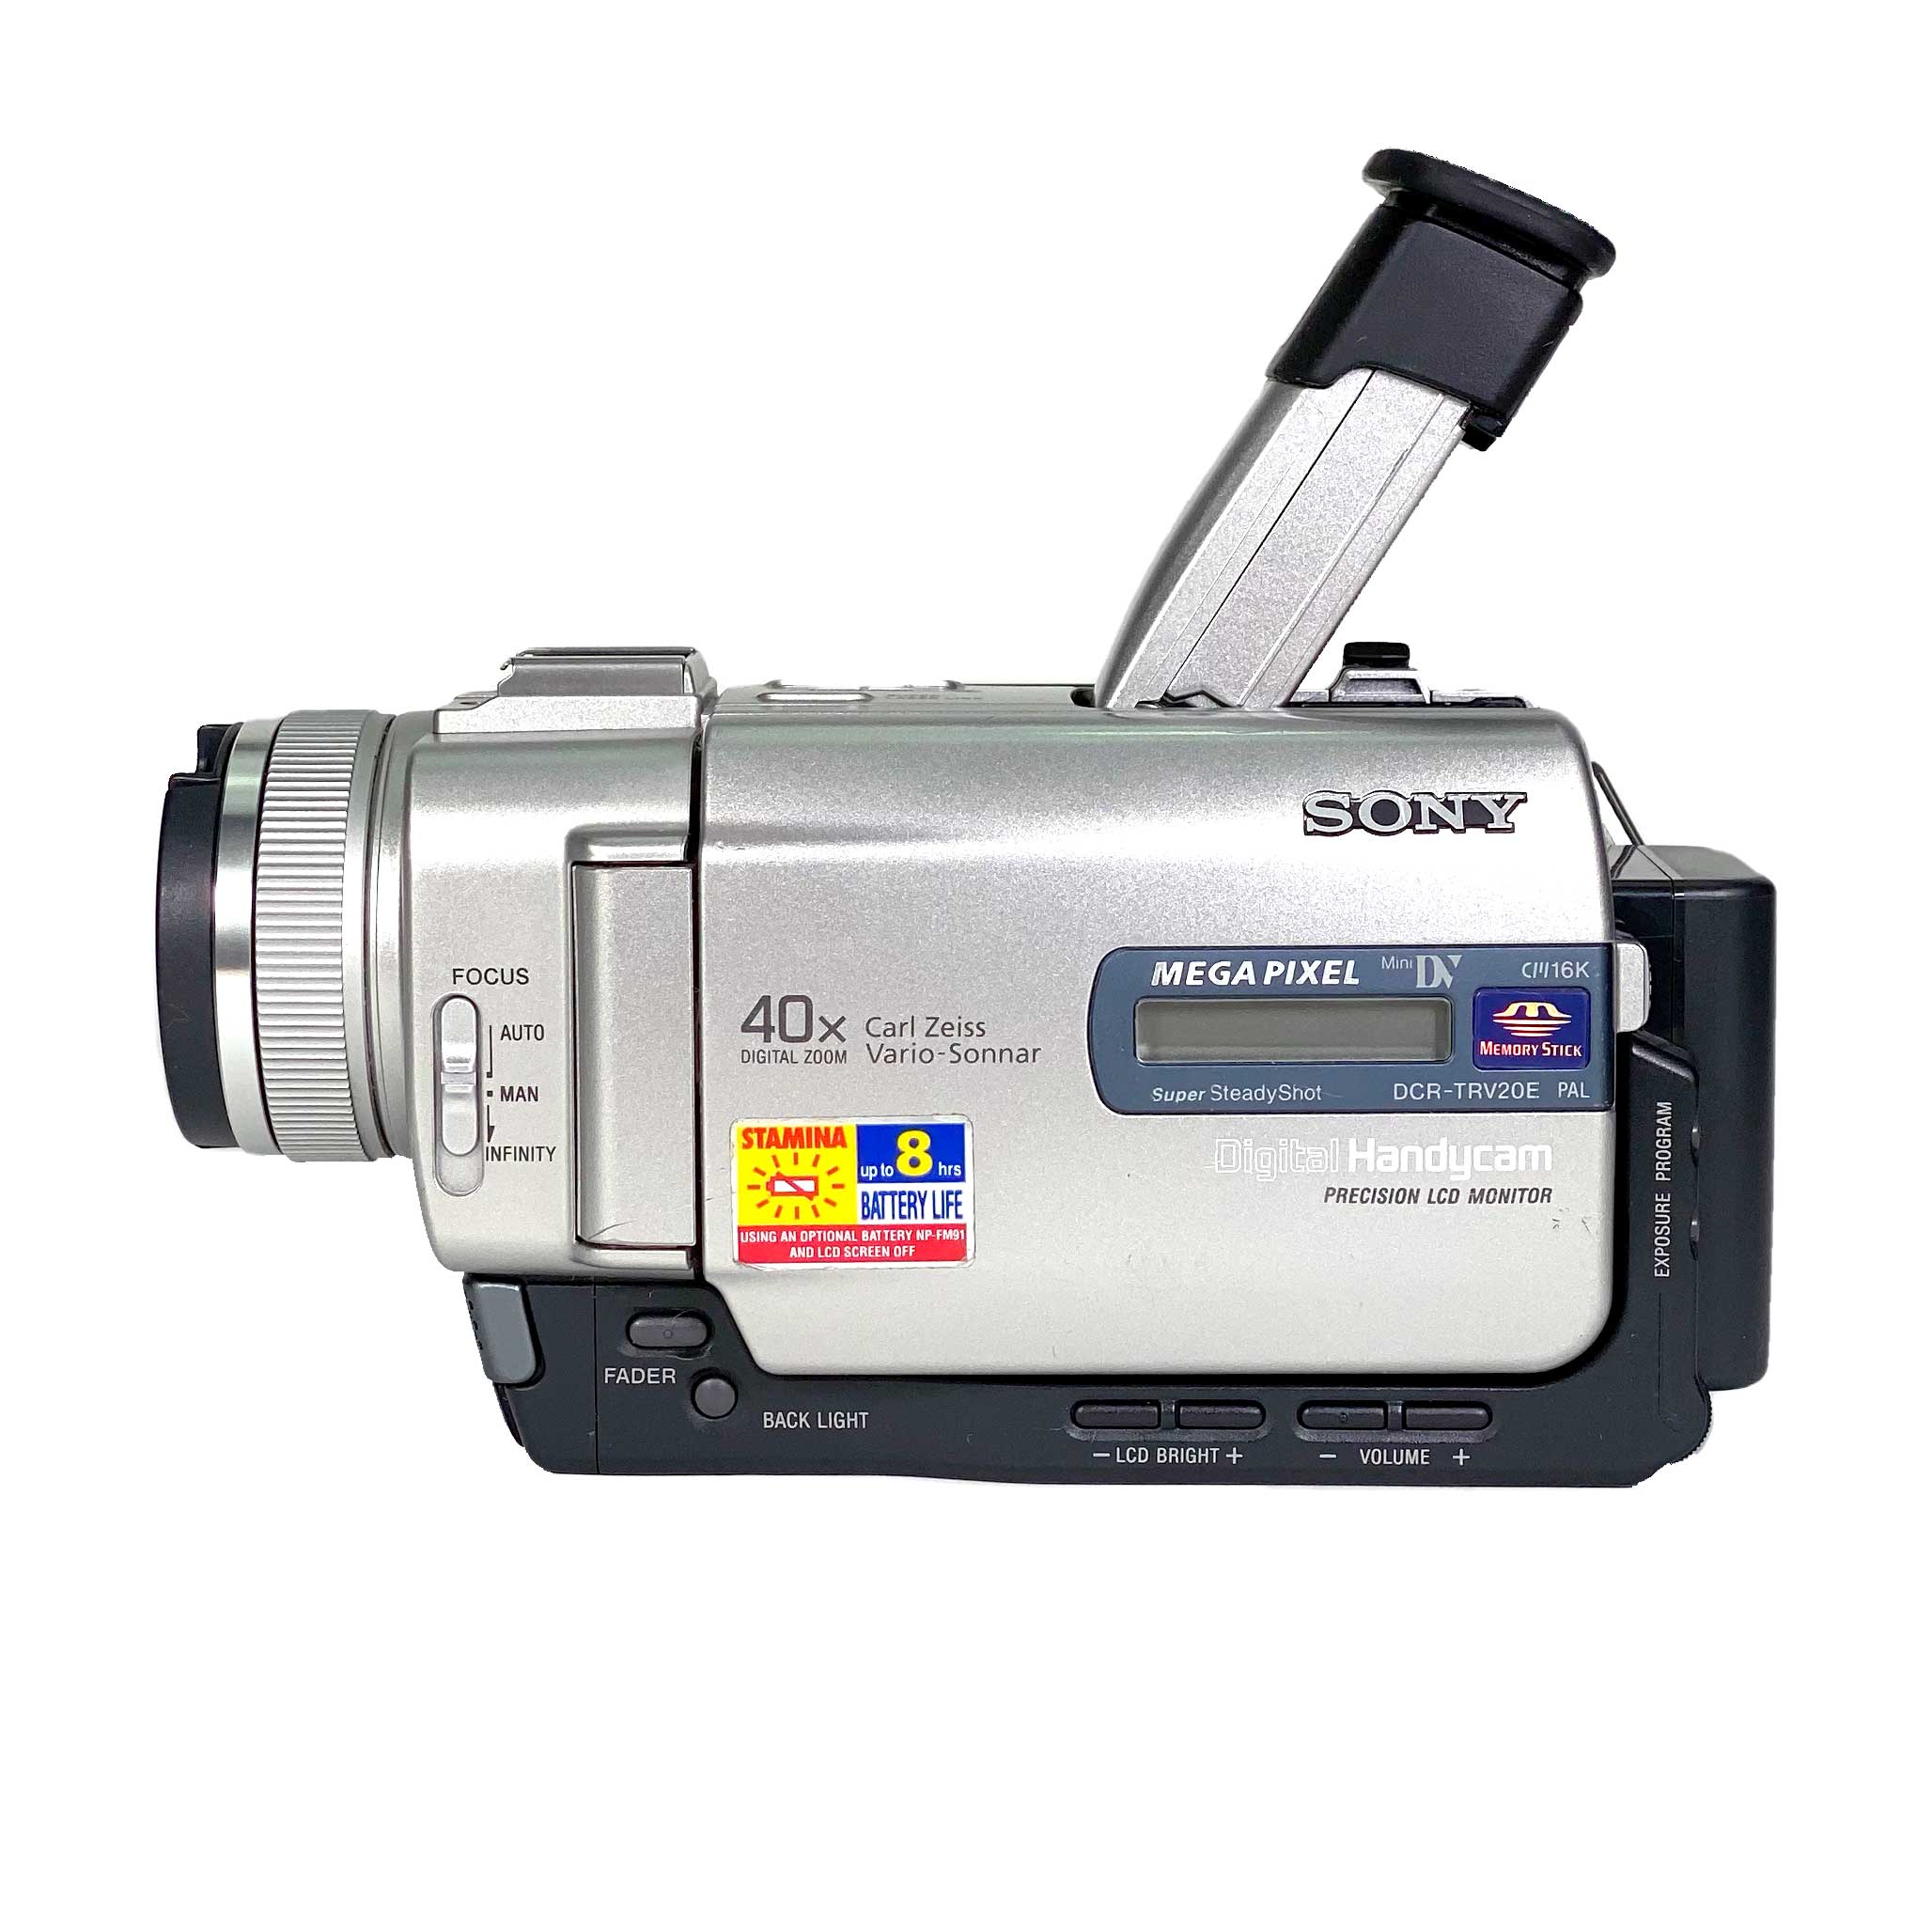 デジタルビデオカメラ DCR-TRV20 SONY ハンディカム miniDV - ビデオカメラ